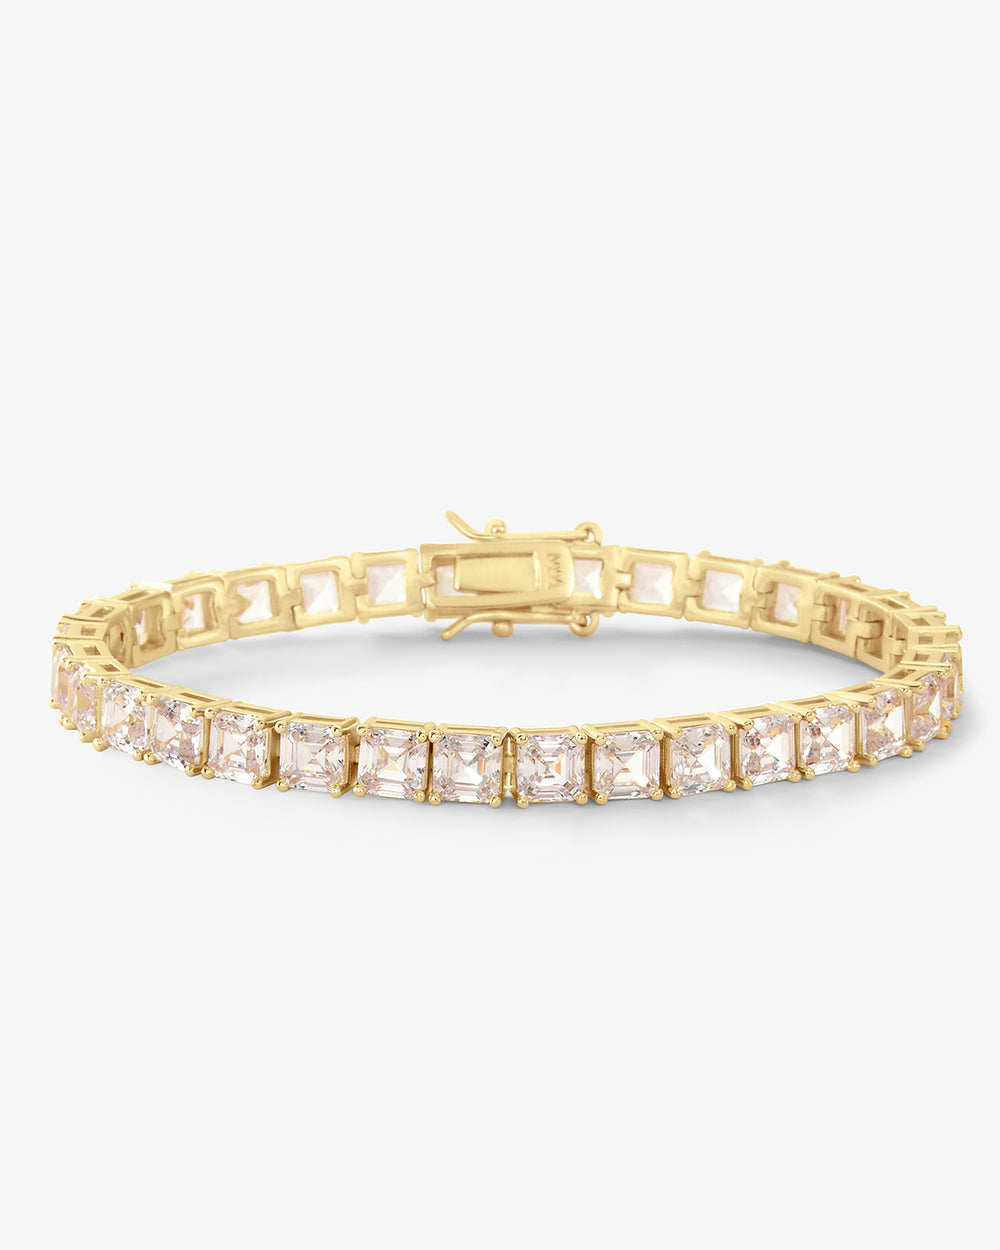 The Queen's Tennis Bracelet – Melinda Maria Jewelry